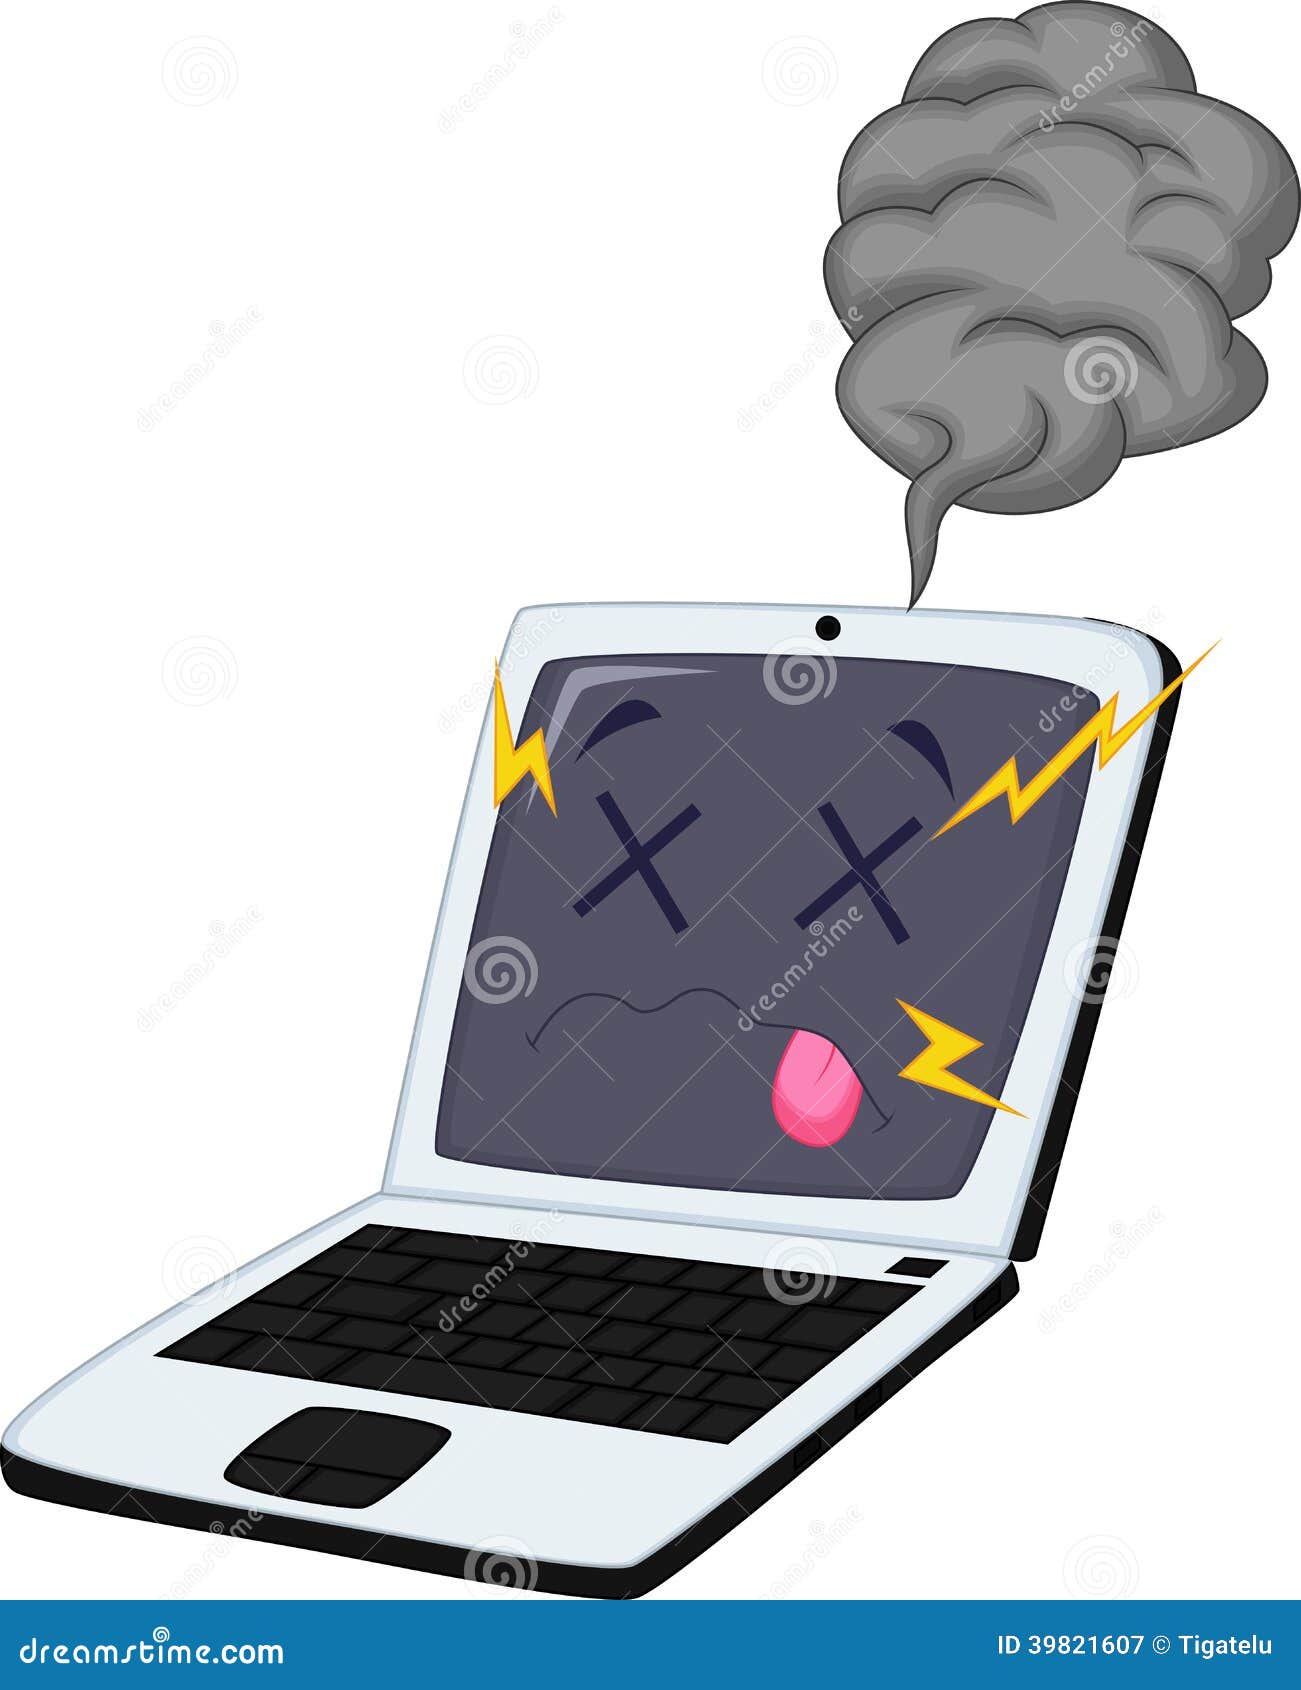 Broken Laptop Cartoon Stock Vector - Image: 39821607